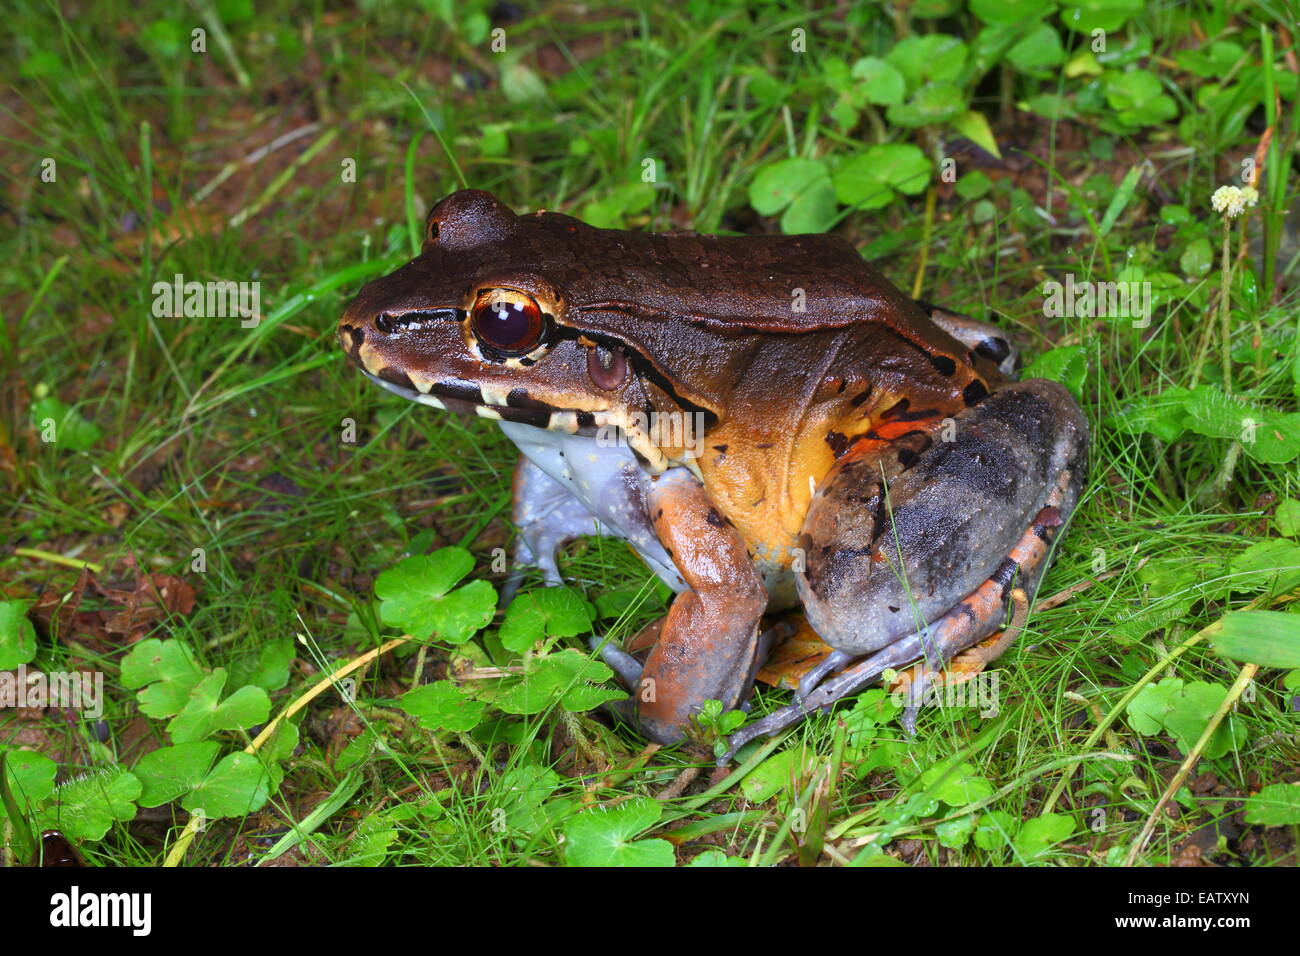 A smoky jungle frog waiting to ambush prey at night. Stock Photo